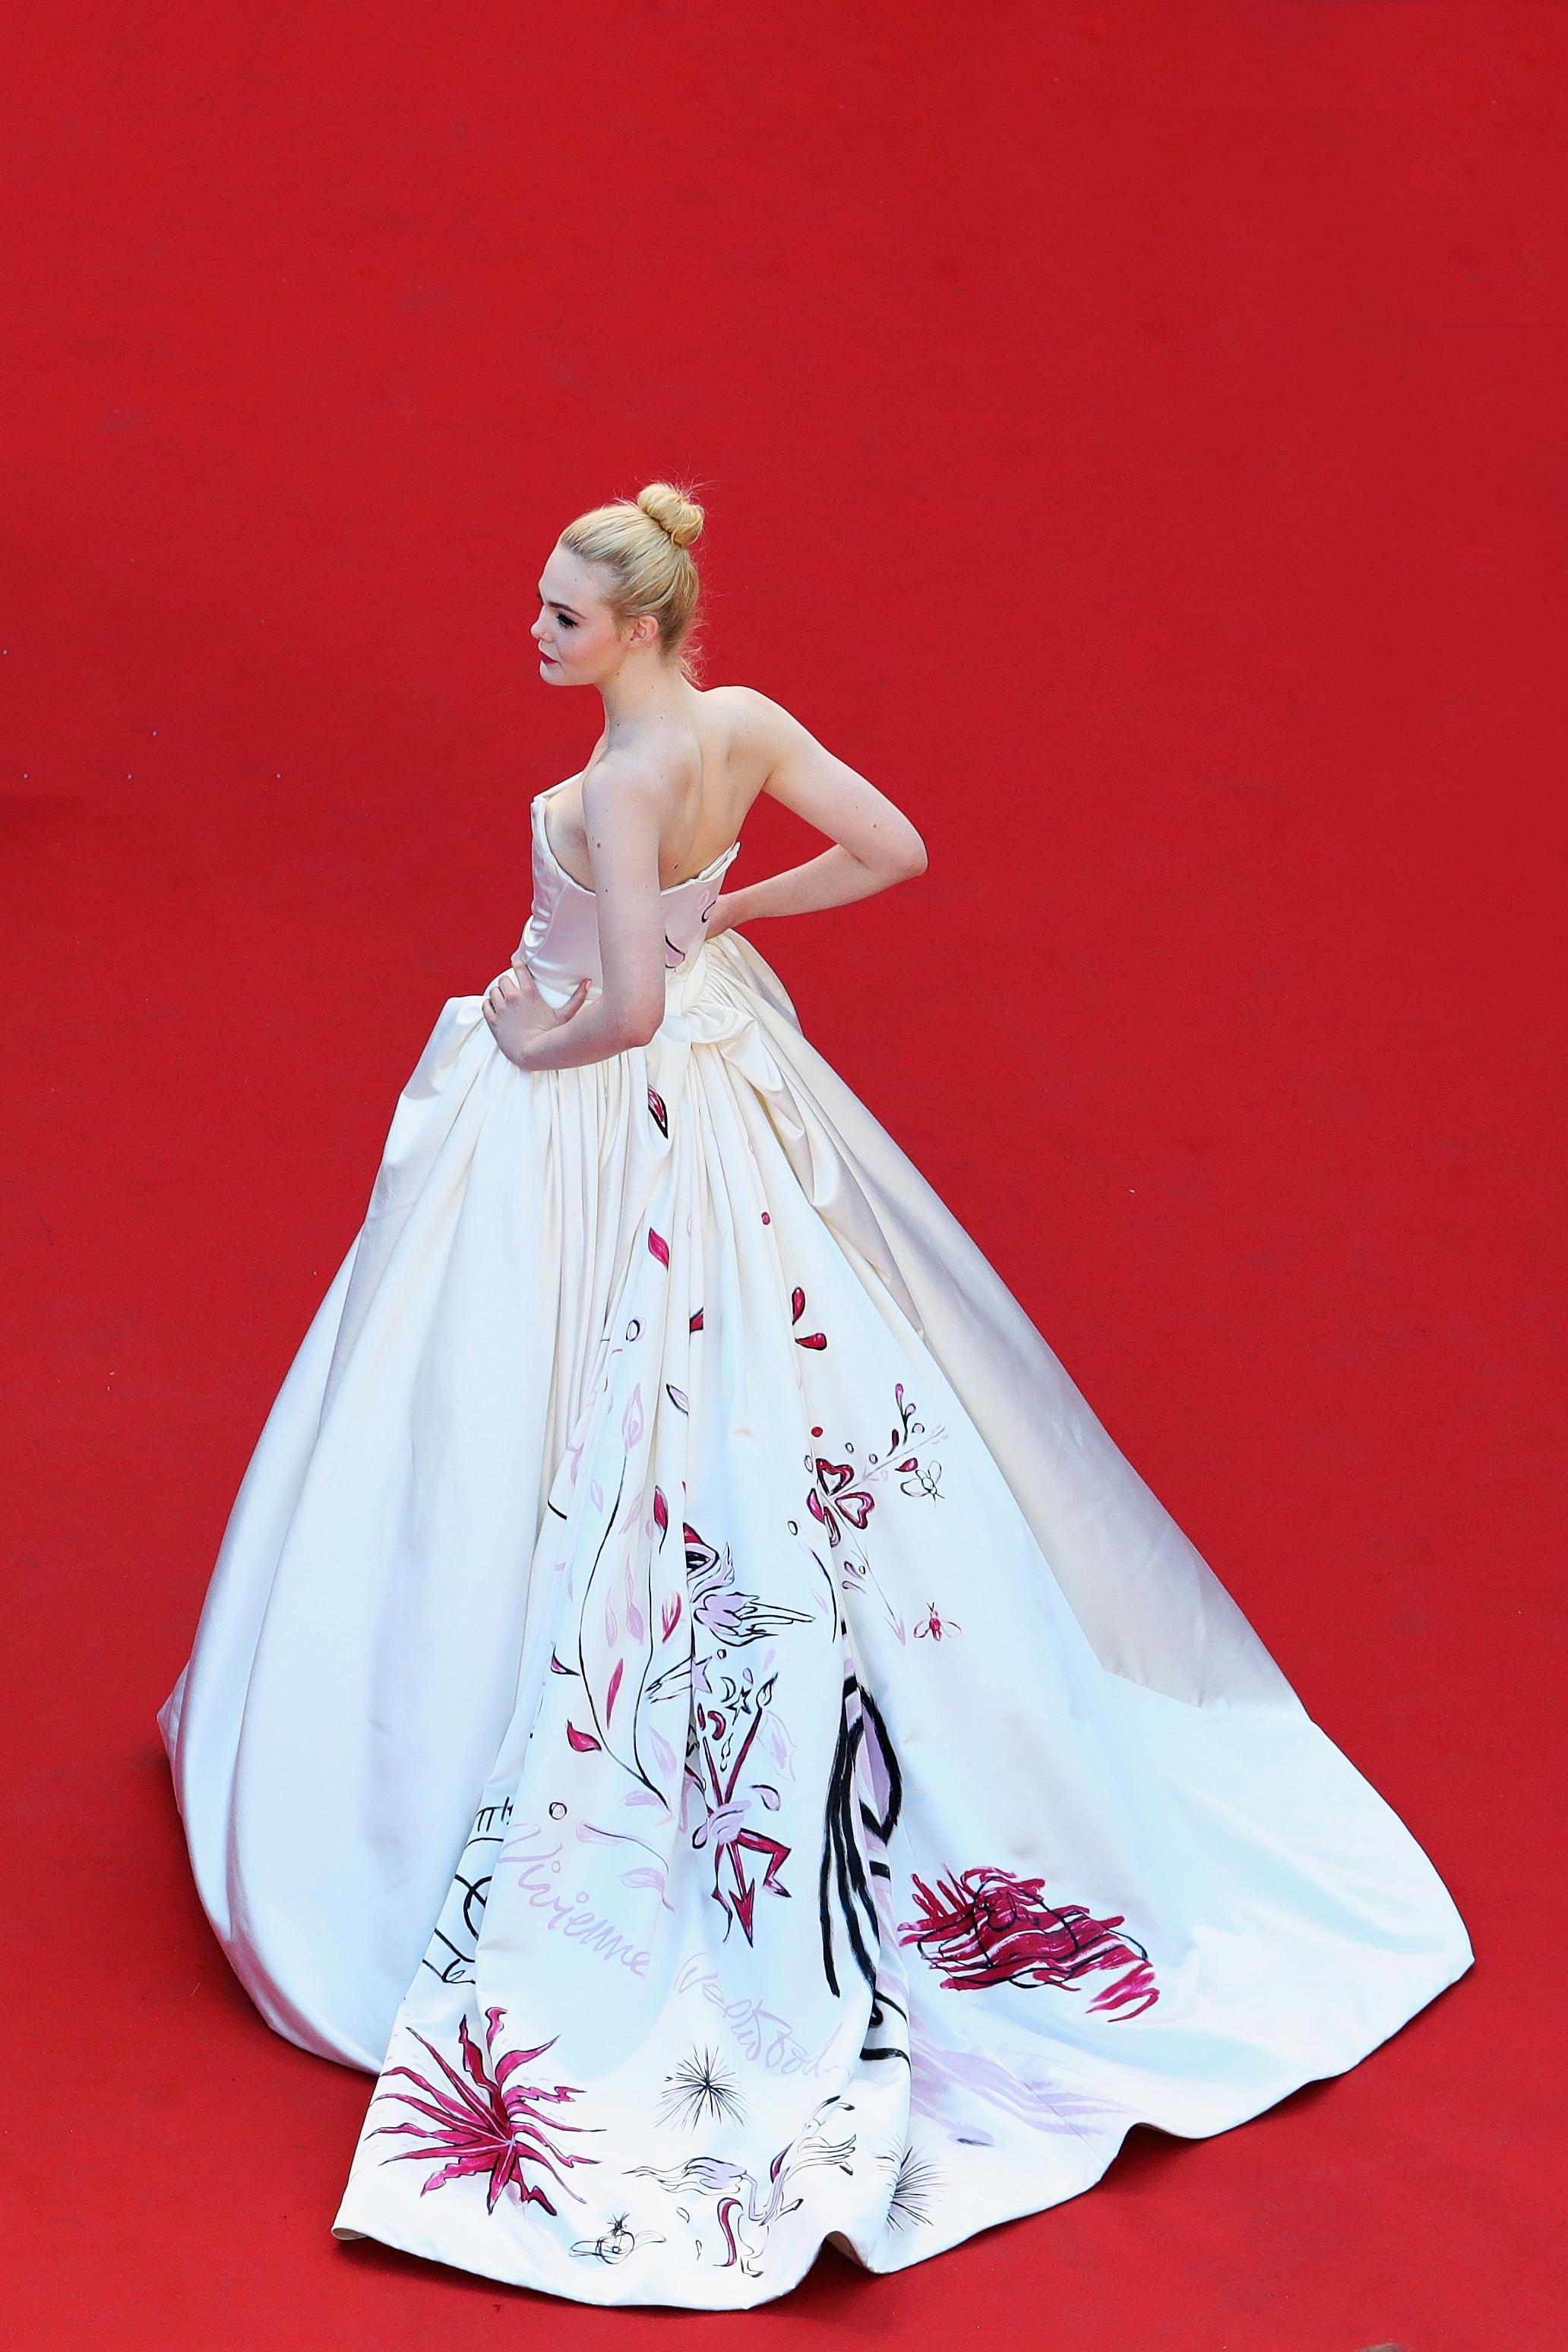 Elle Fanning bar denne kreasjonen av Vivienne Westwood under filmfestivalen i Cannes i 2017. Legg merke til det håndmalte mønsteret.